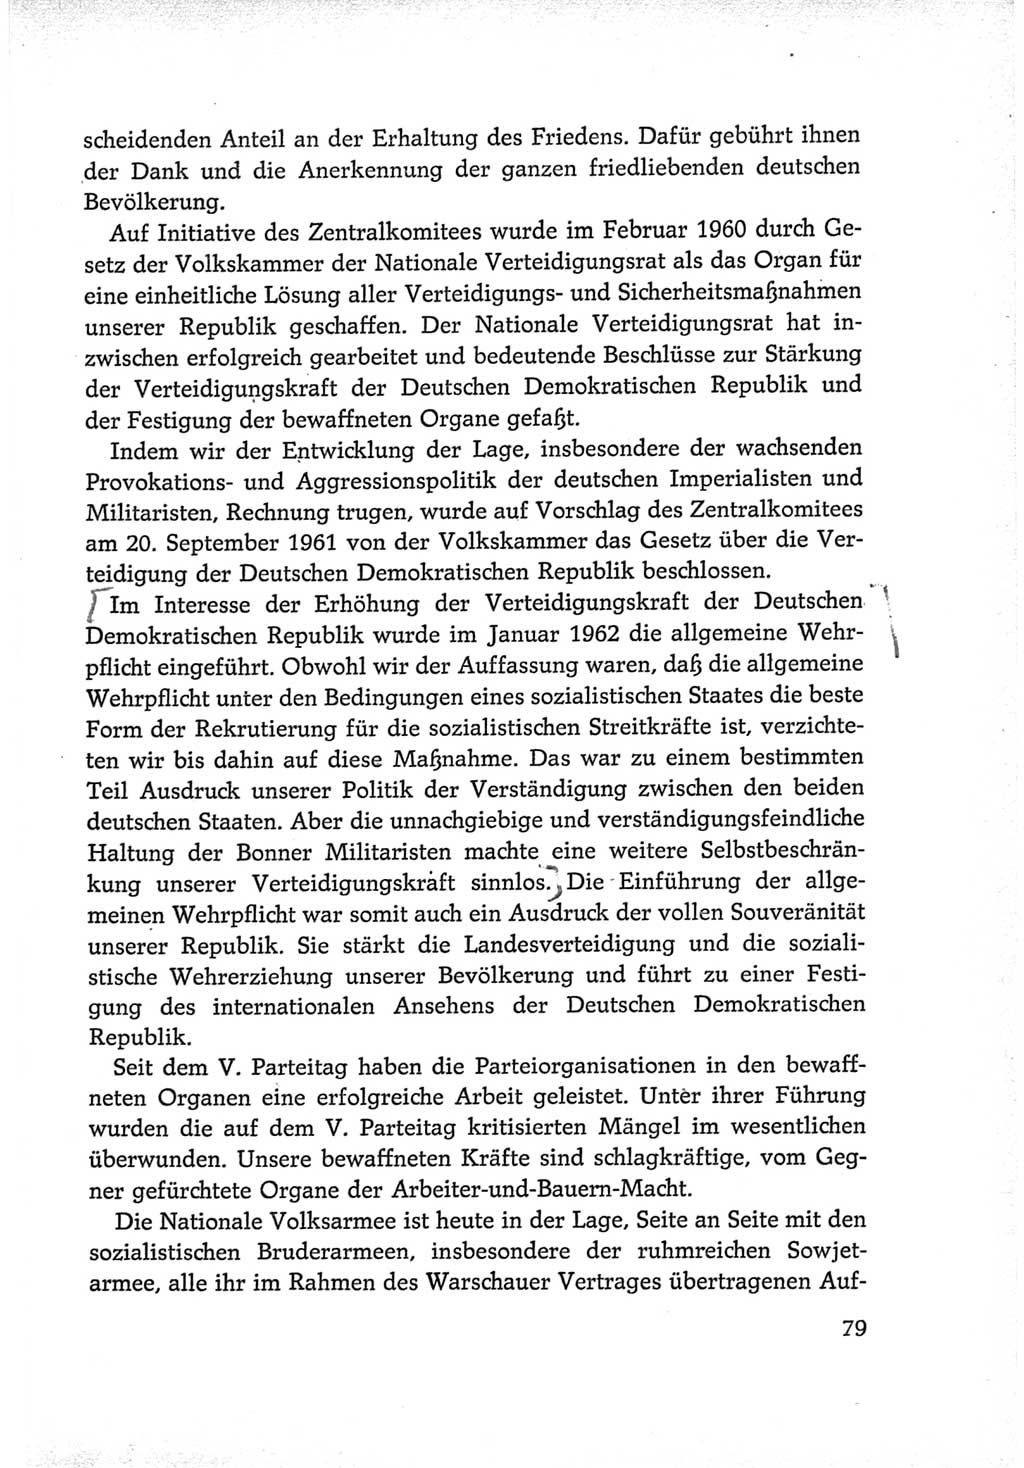 Protokoll der Verhandlungen des Ⅵ. Parteitages der Sozialistischen Einheitspartei Deutschlands (SED) [Deutsche Demokratische Republik (DDR)] 1963, Band Ⅳ, Seite 79 (Prot. Verh. Ⅵ. PT SED DDR 1963, Bd. Ⅳ, S. 79)